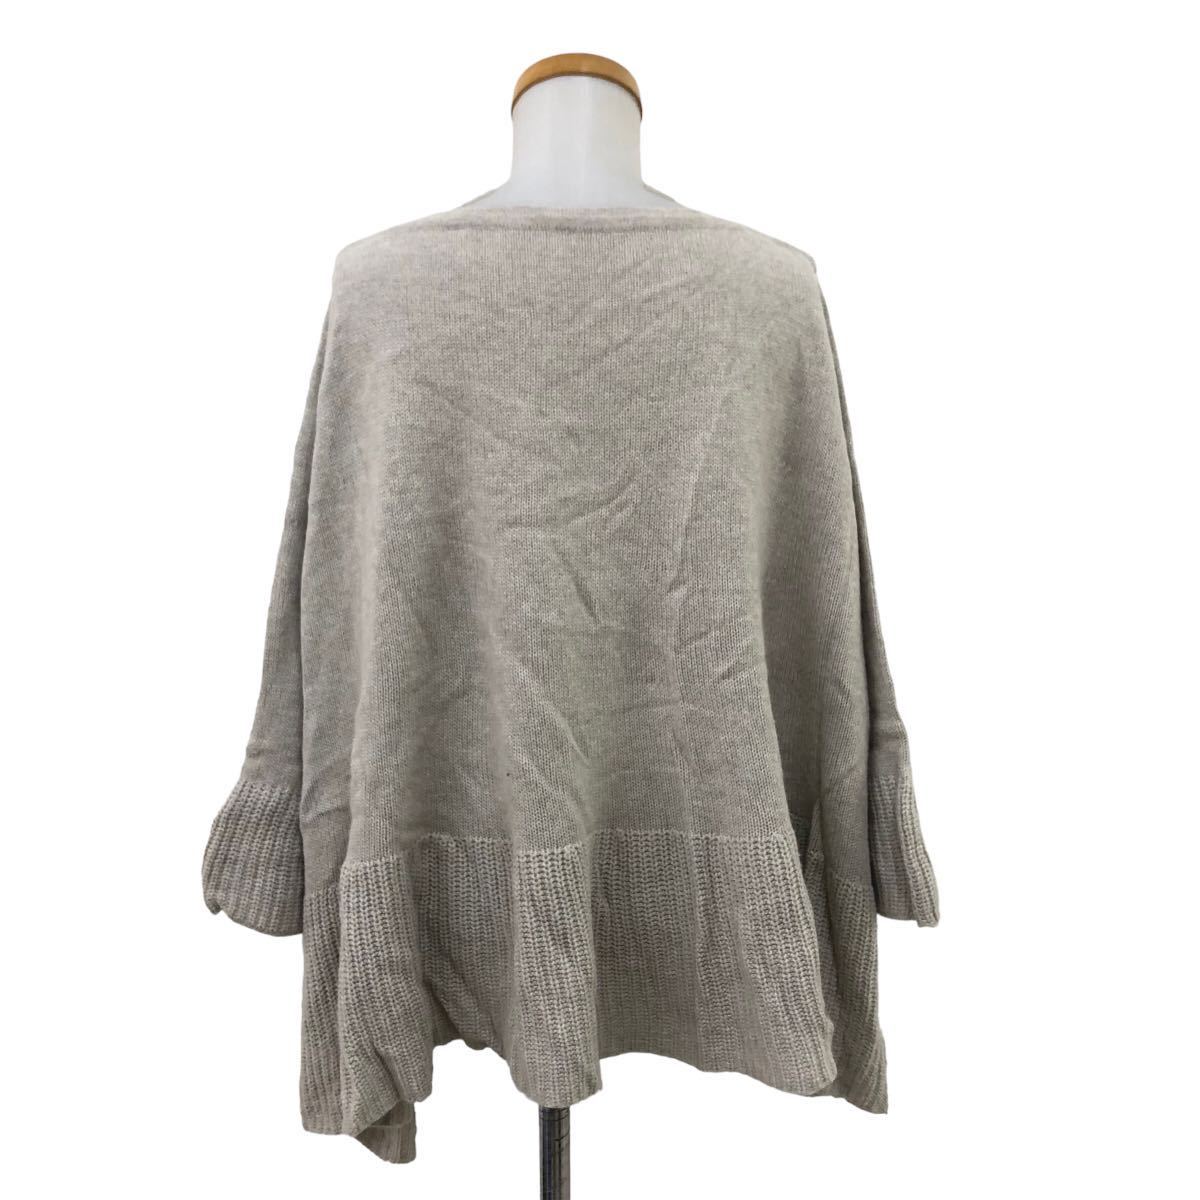 NB193 ADIEU TRISTESSE Adieu Tristesse вязаный свитер свободно дизайн тянуть over tops серый ju серия полный размер справка сделано в Японии 